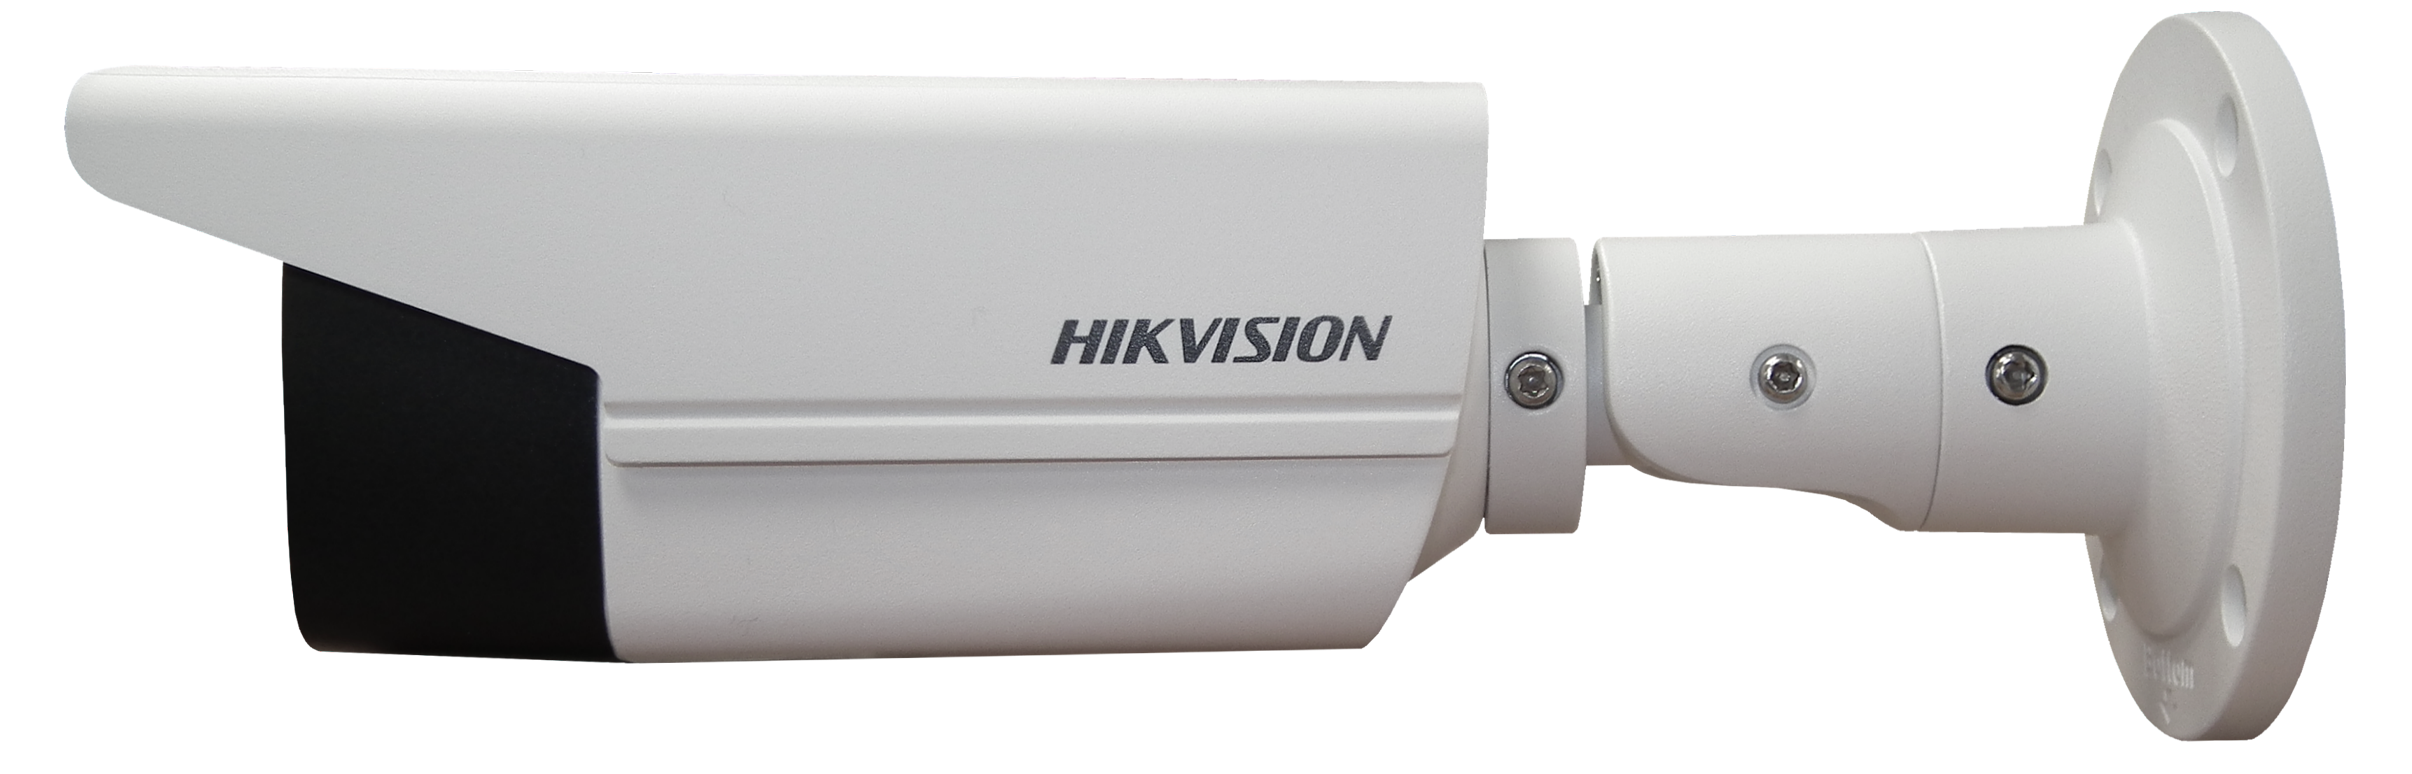 hikvision 50 mtr bullet camera